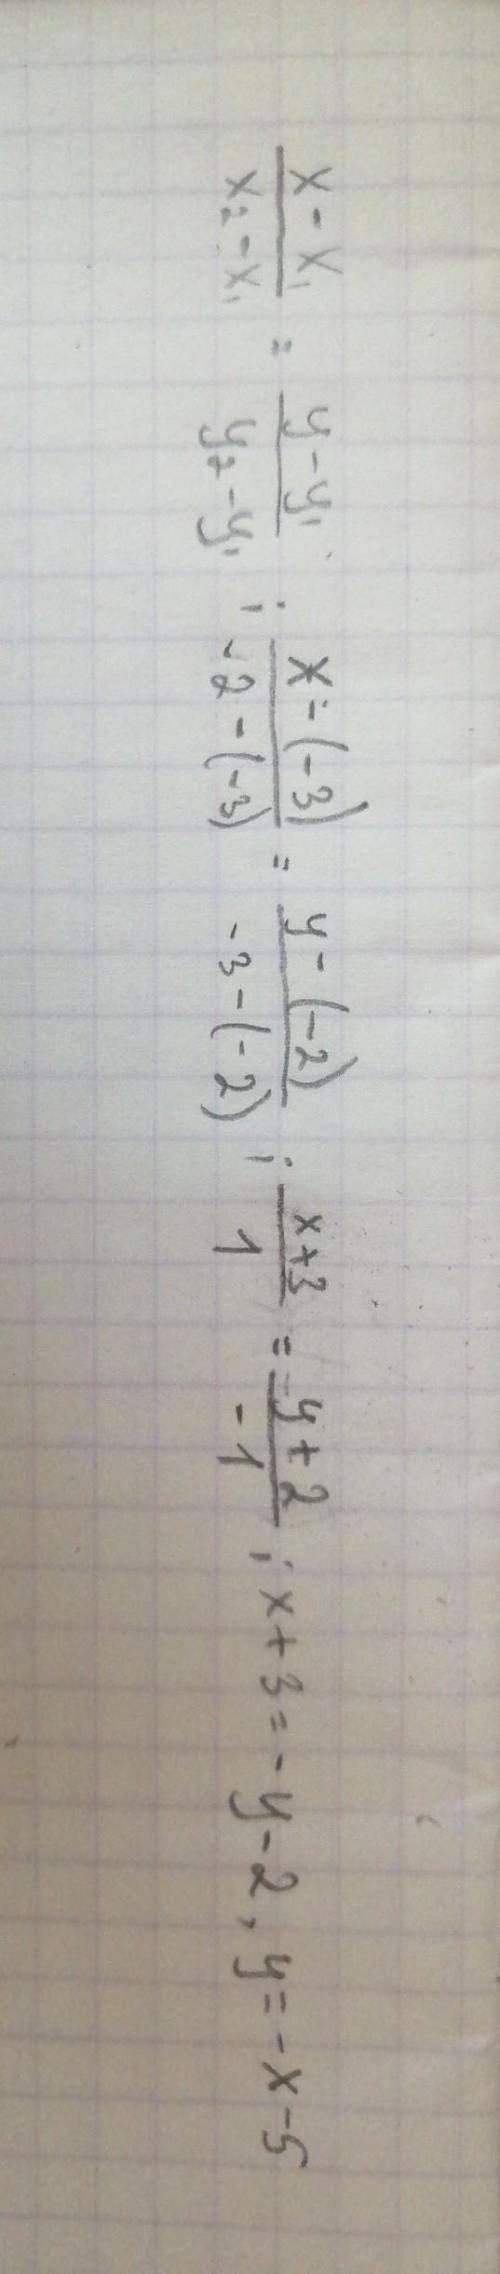 Очень не могу решить. Напишите уравнение прямой, проходящей через точки К(-3;-2) и M(-2;-3). Выберит